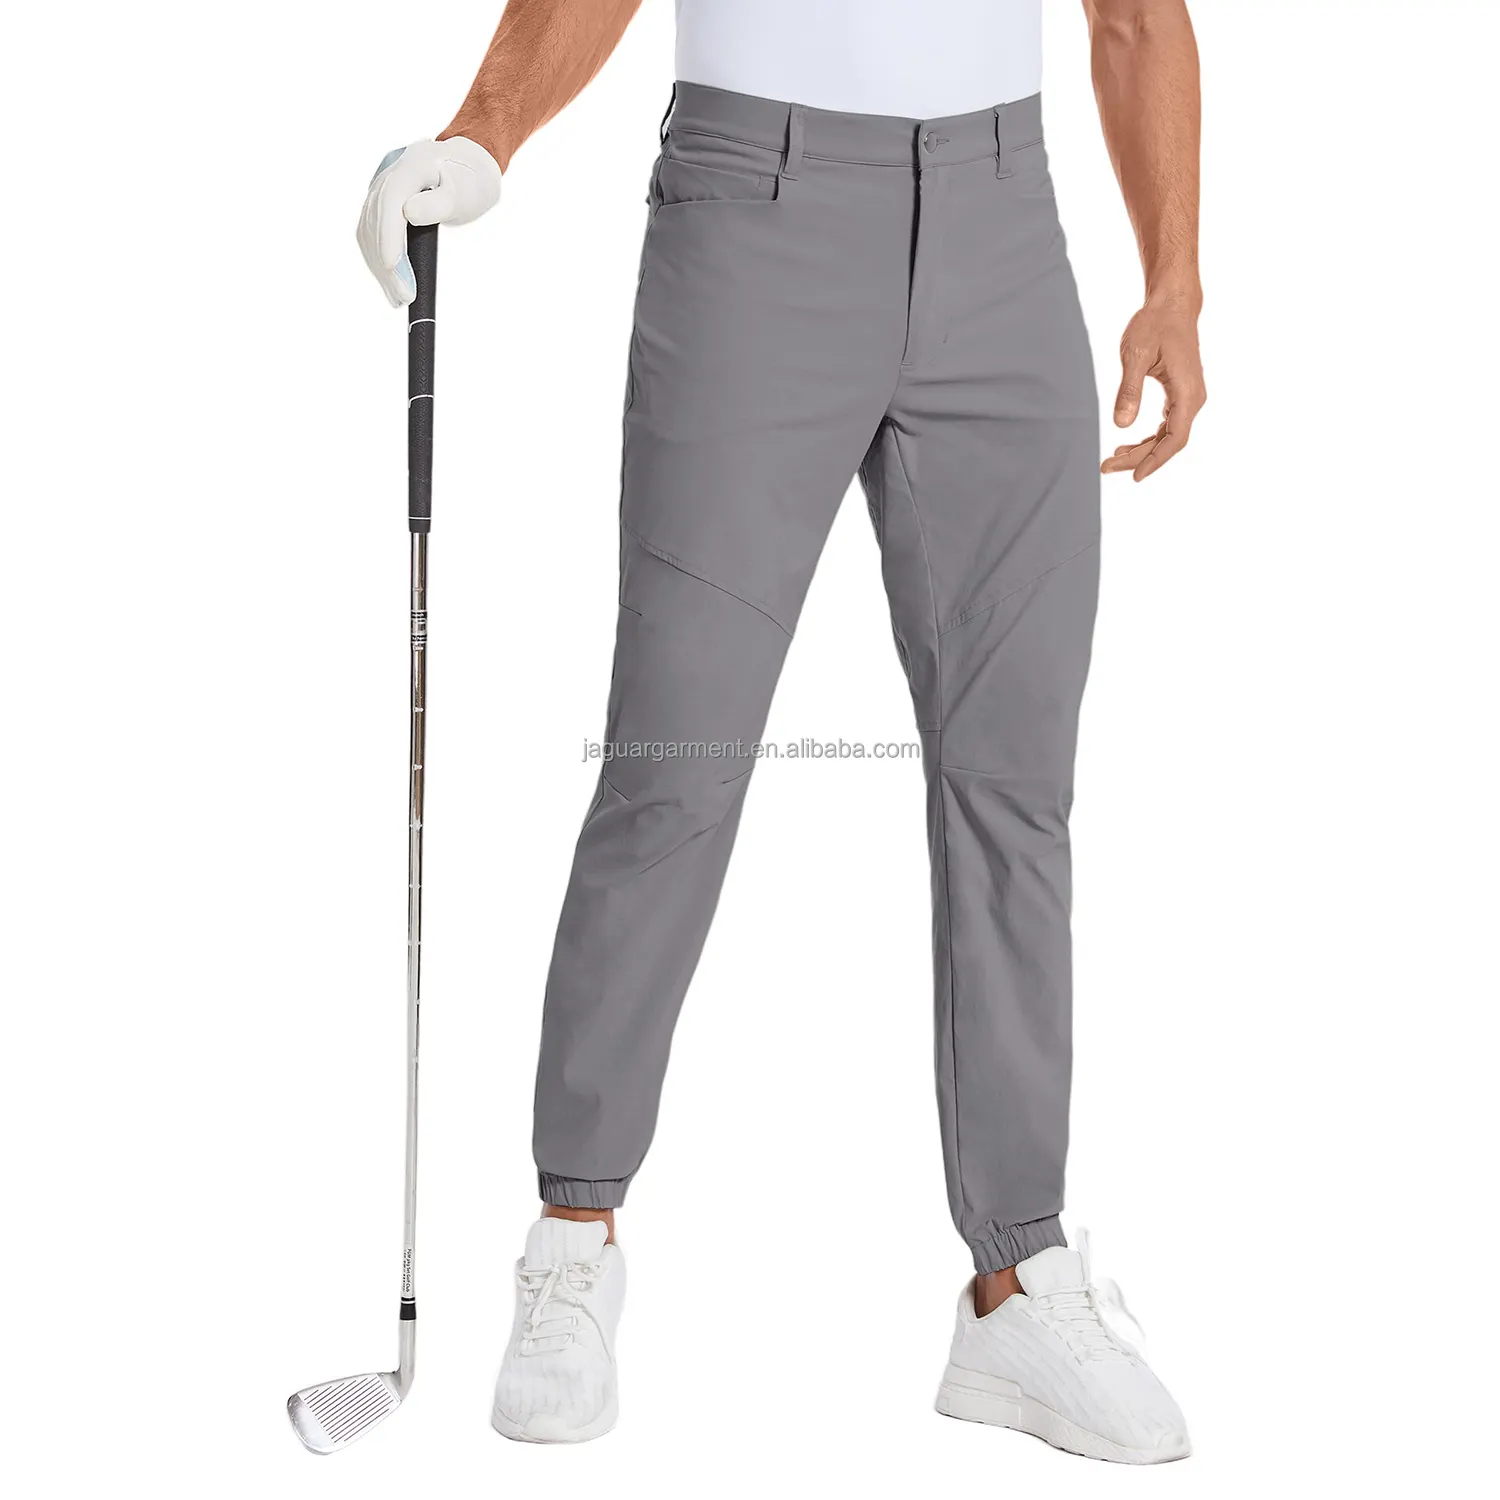 Commercio all'ingrosso della fabbrica rapida asciugatura formale pantaloni da uomo in bianco pantaloni sportivi da uomo in poliestere Spandex pantaloni da Golf per gli uomini